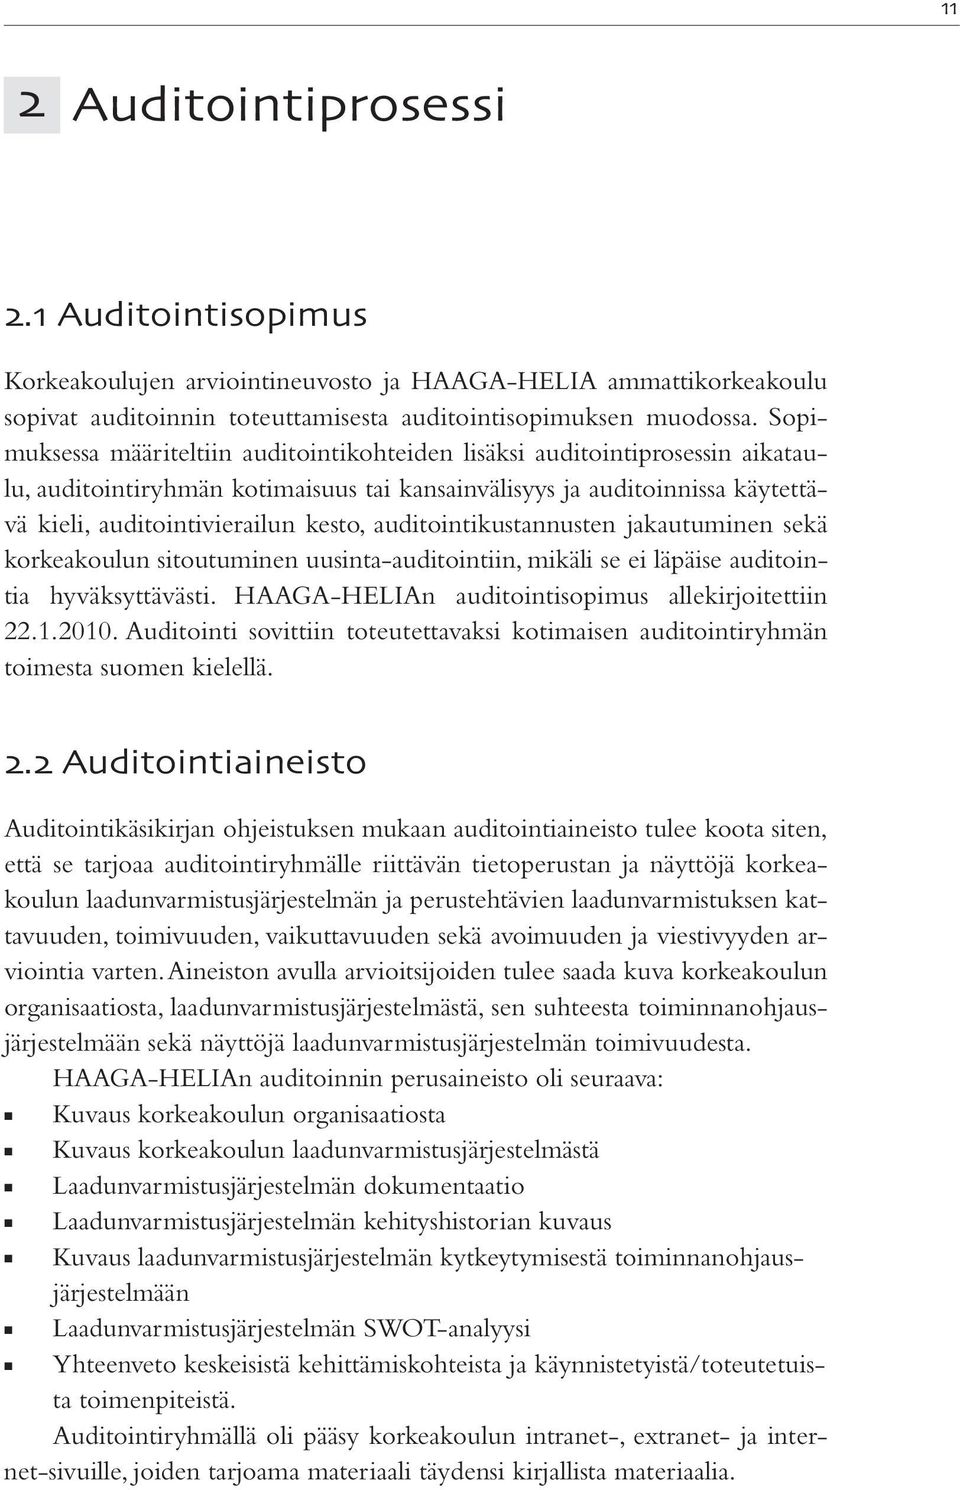 auditointikustannusten jakautuminen sekä korkeakoulun sitoutuminen uusinta-auditointiin, mikäli se ei läpäise auditointia hyväksyttävästi. HAAGA-HELIAn auditointisopimus allekirjoitettiin 22.1.2010.